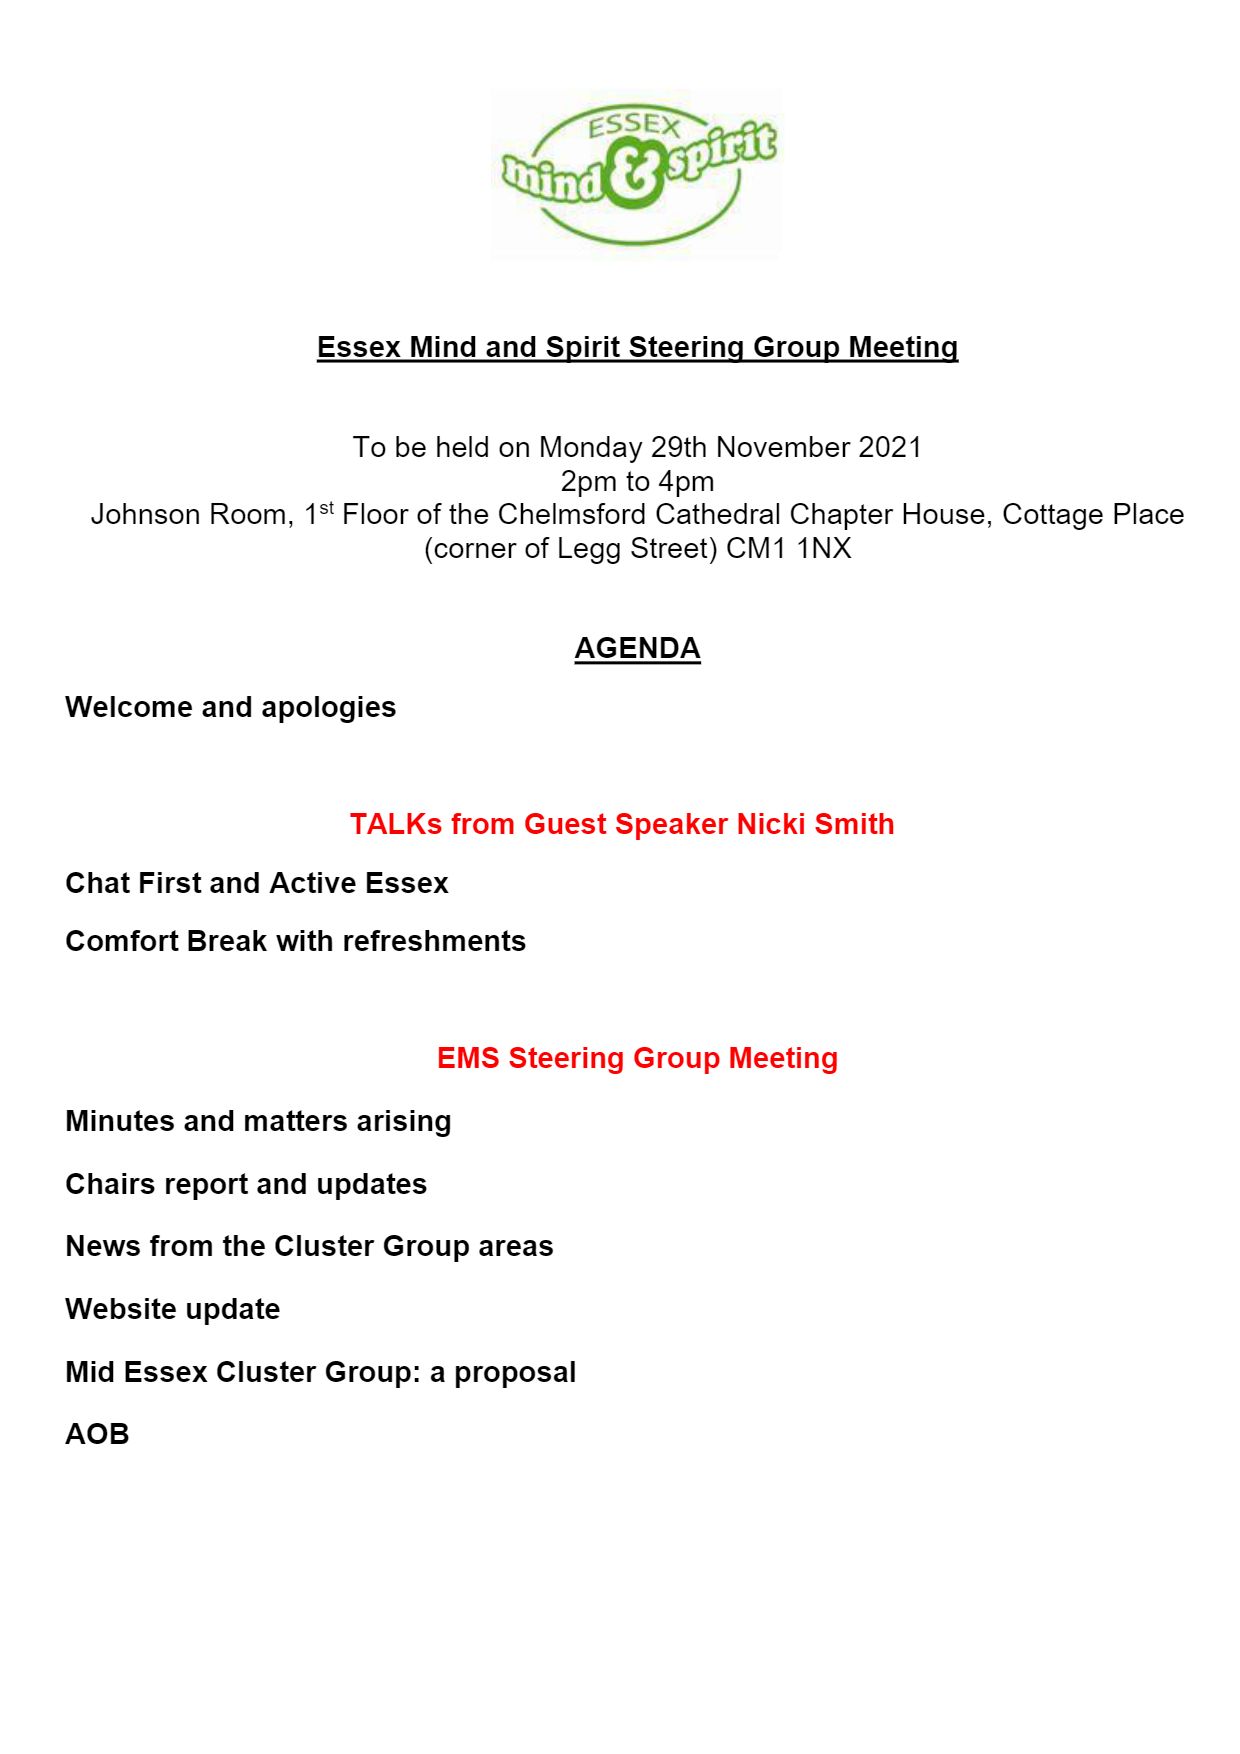 EMS steering group agenda